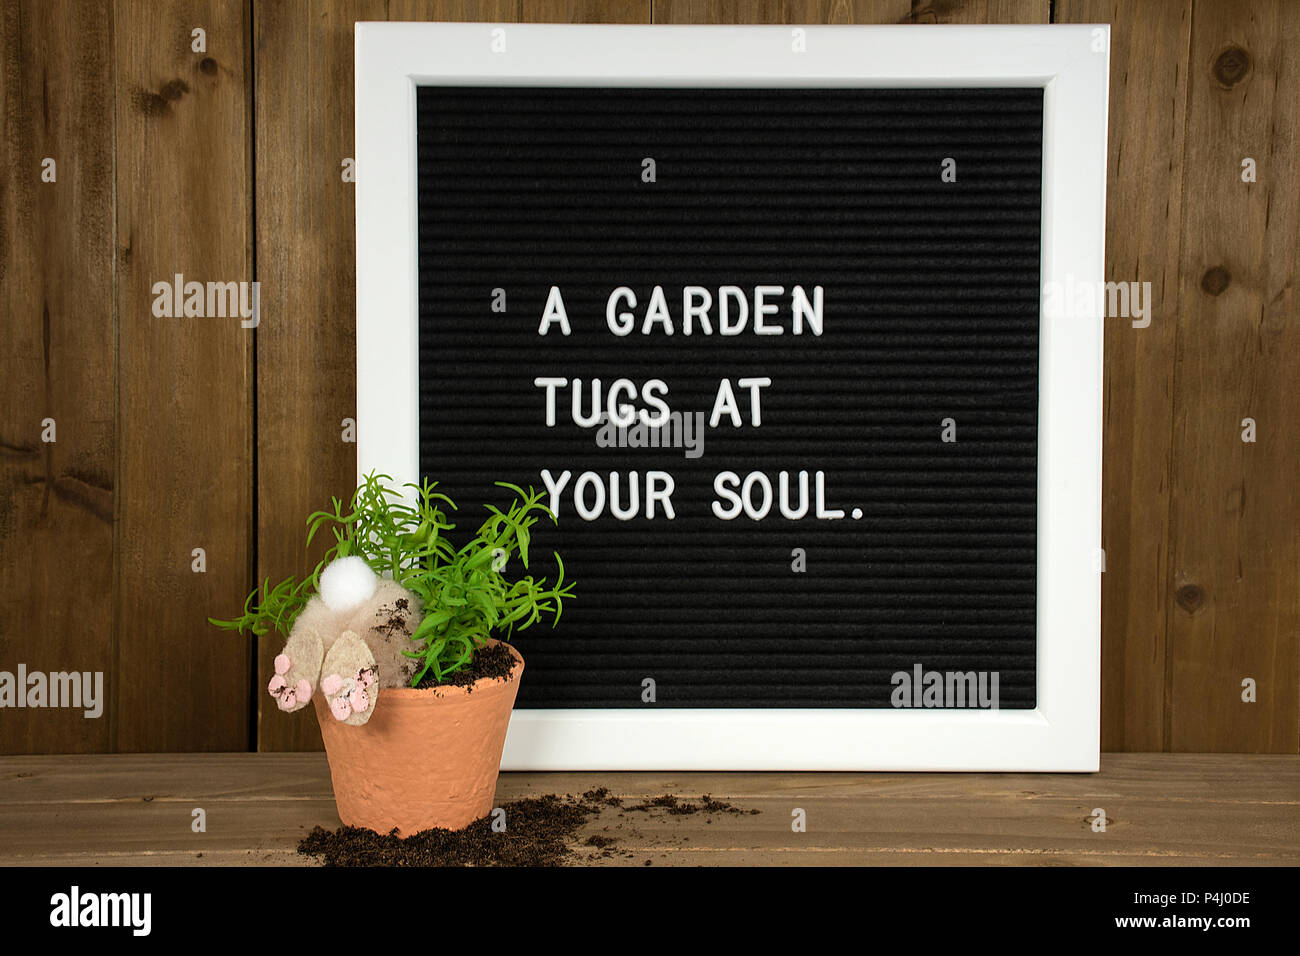 Inspirational Garten Angebot für Message Board mit Bunny in Topfpflanze und Schmutz auf Holz Stockfoto